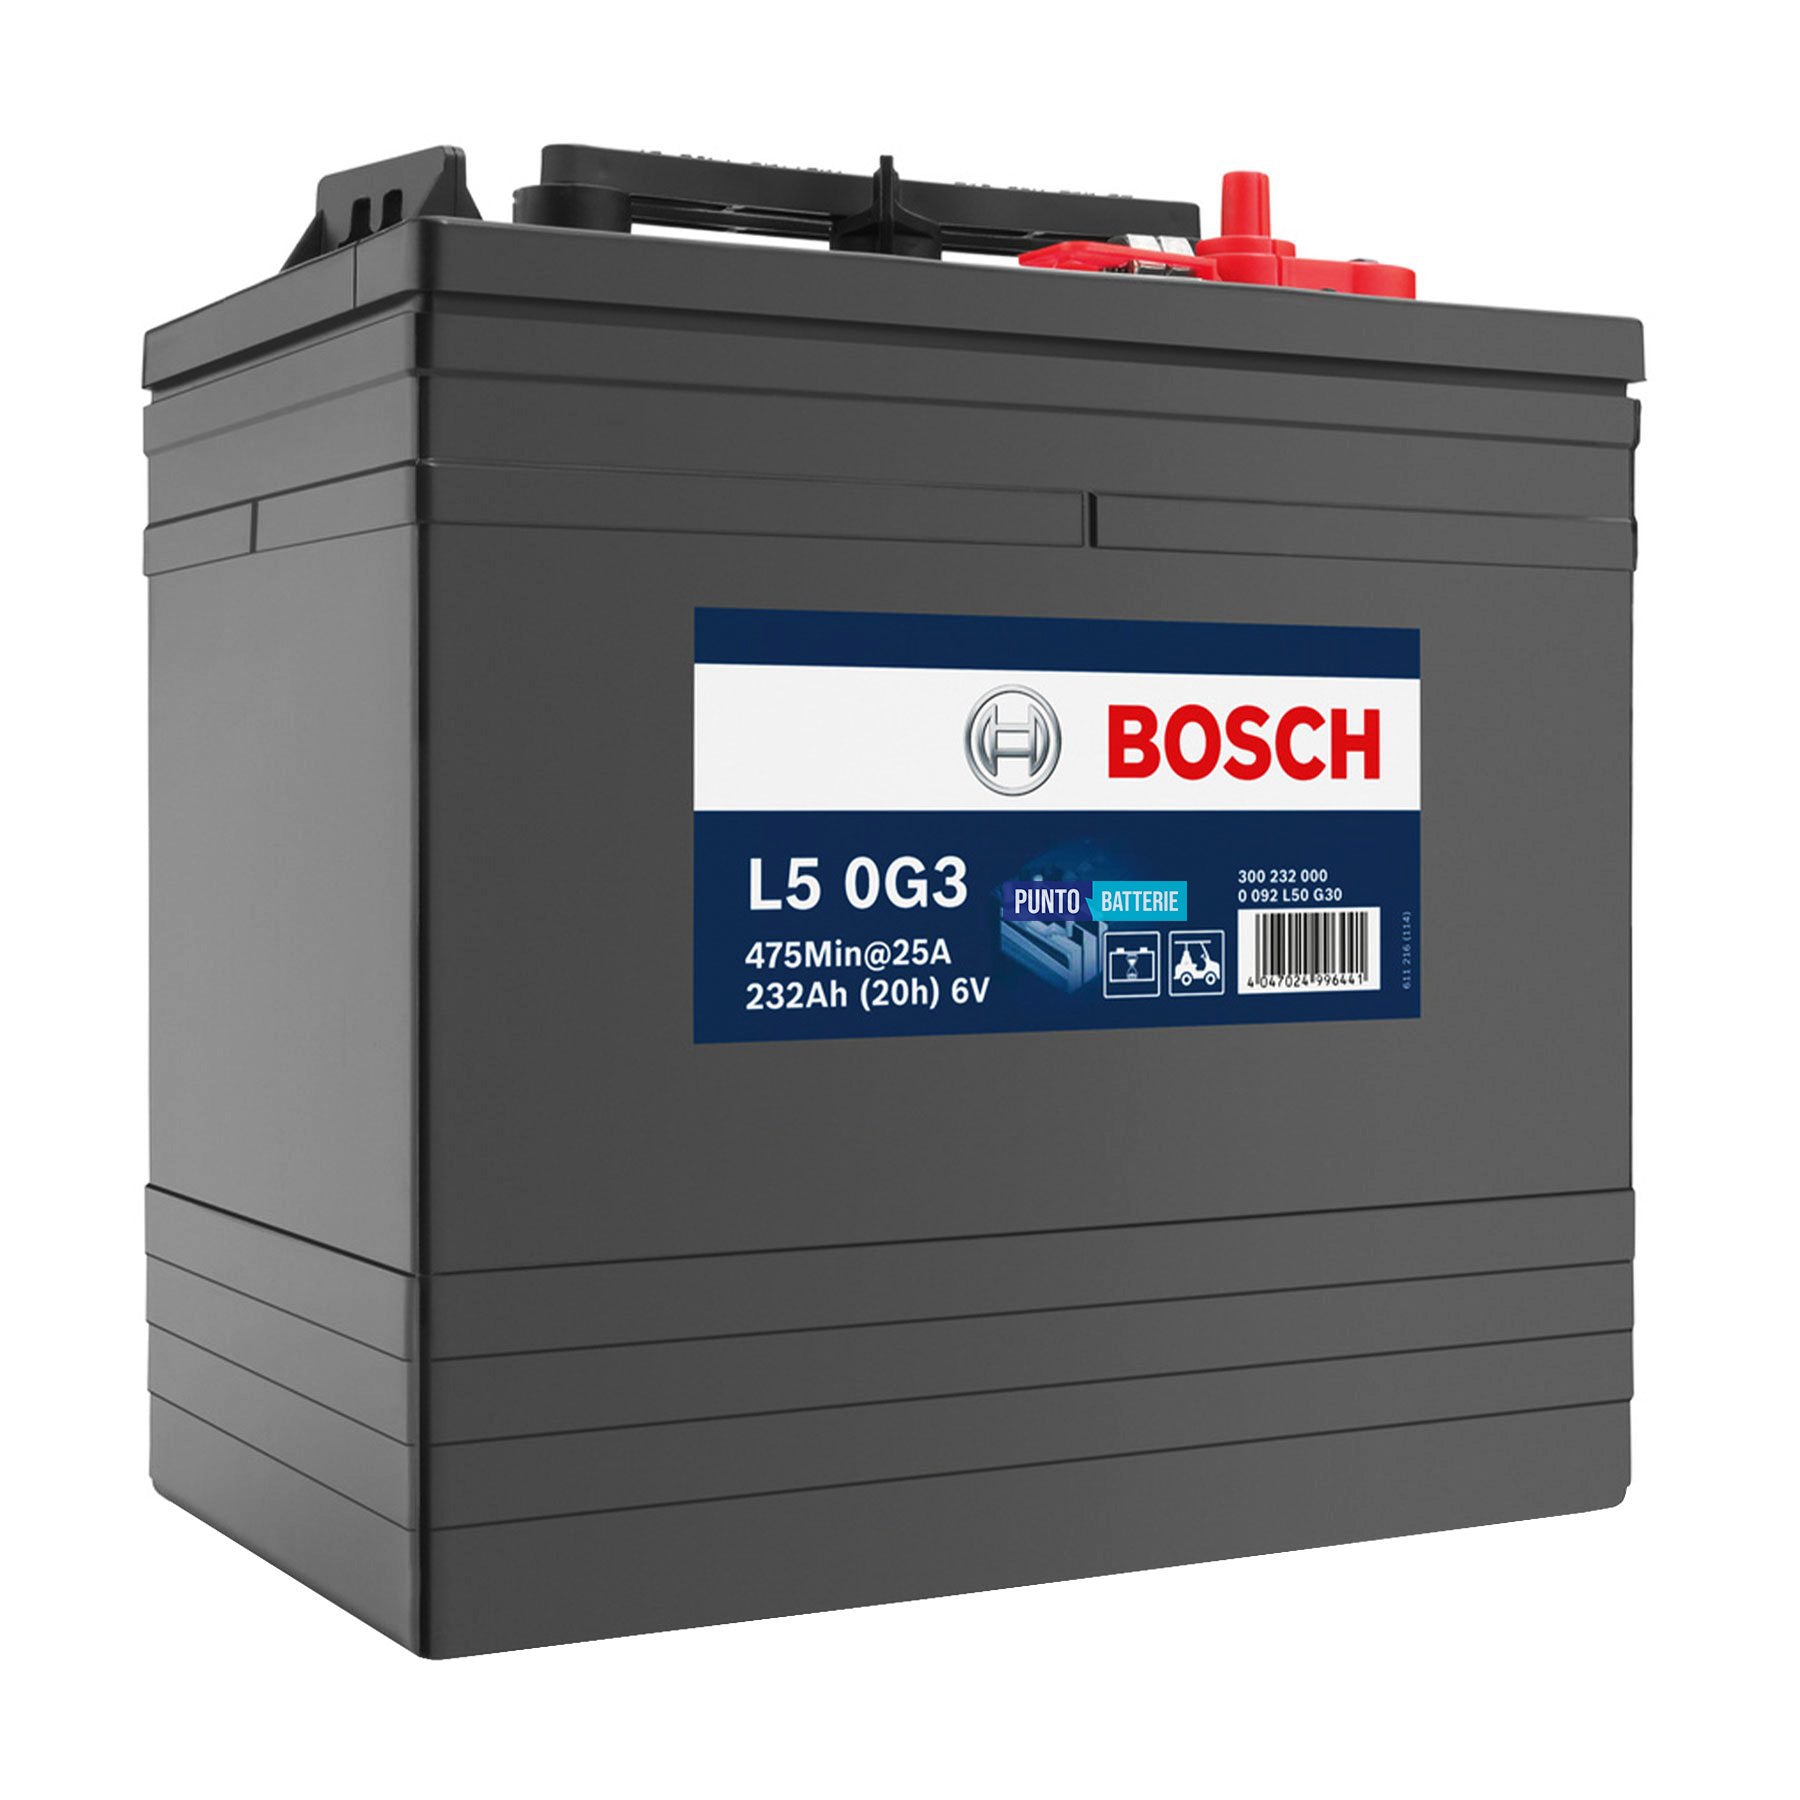 Batteria originale Bosch L5G L5 0G3, dimensioni 261 x 181 x 283, 6 volt, 232 amperora. Batteria per servizi di camper, barca e applicazioni a scarica lenta.